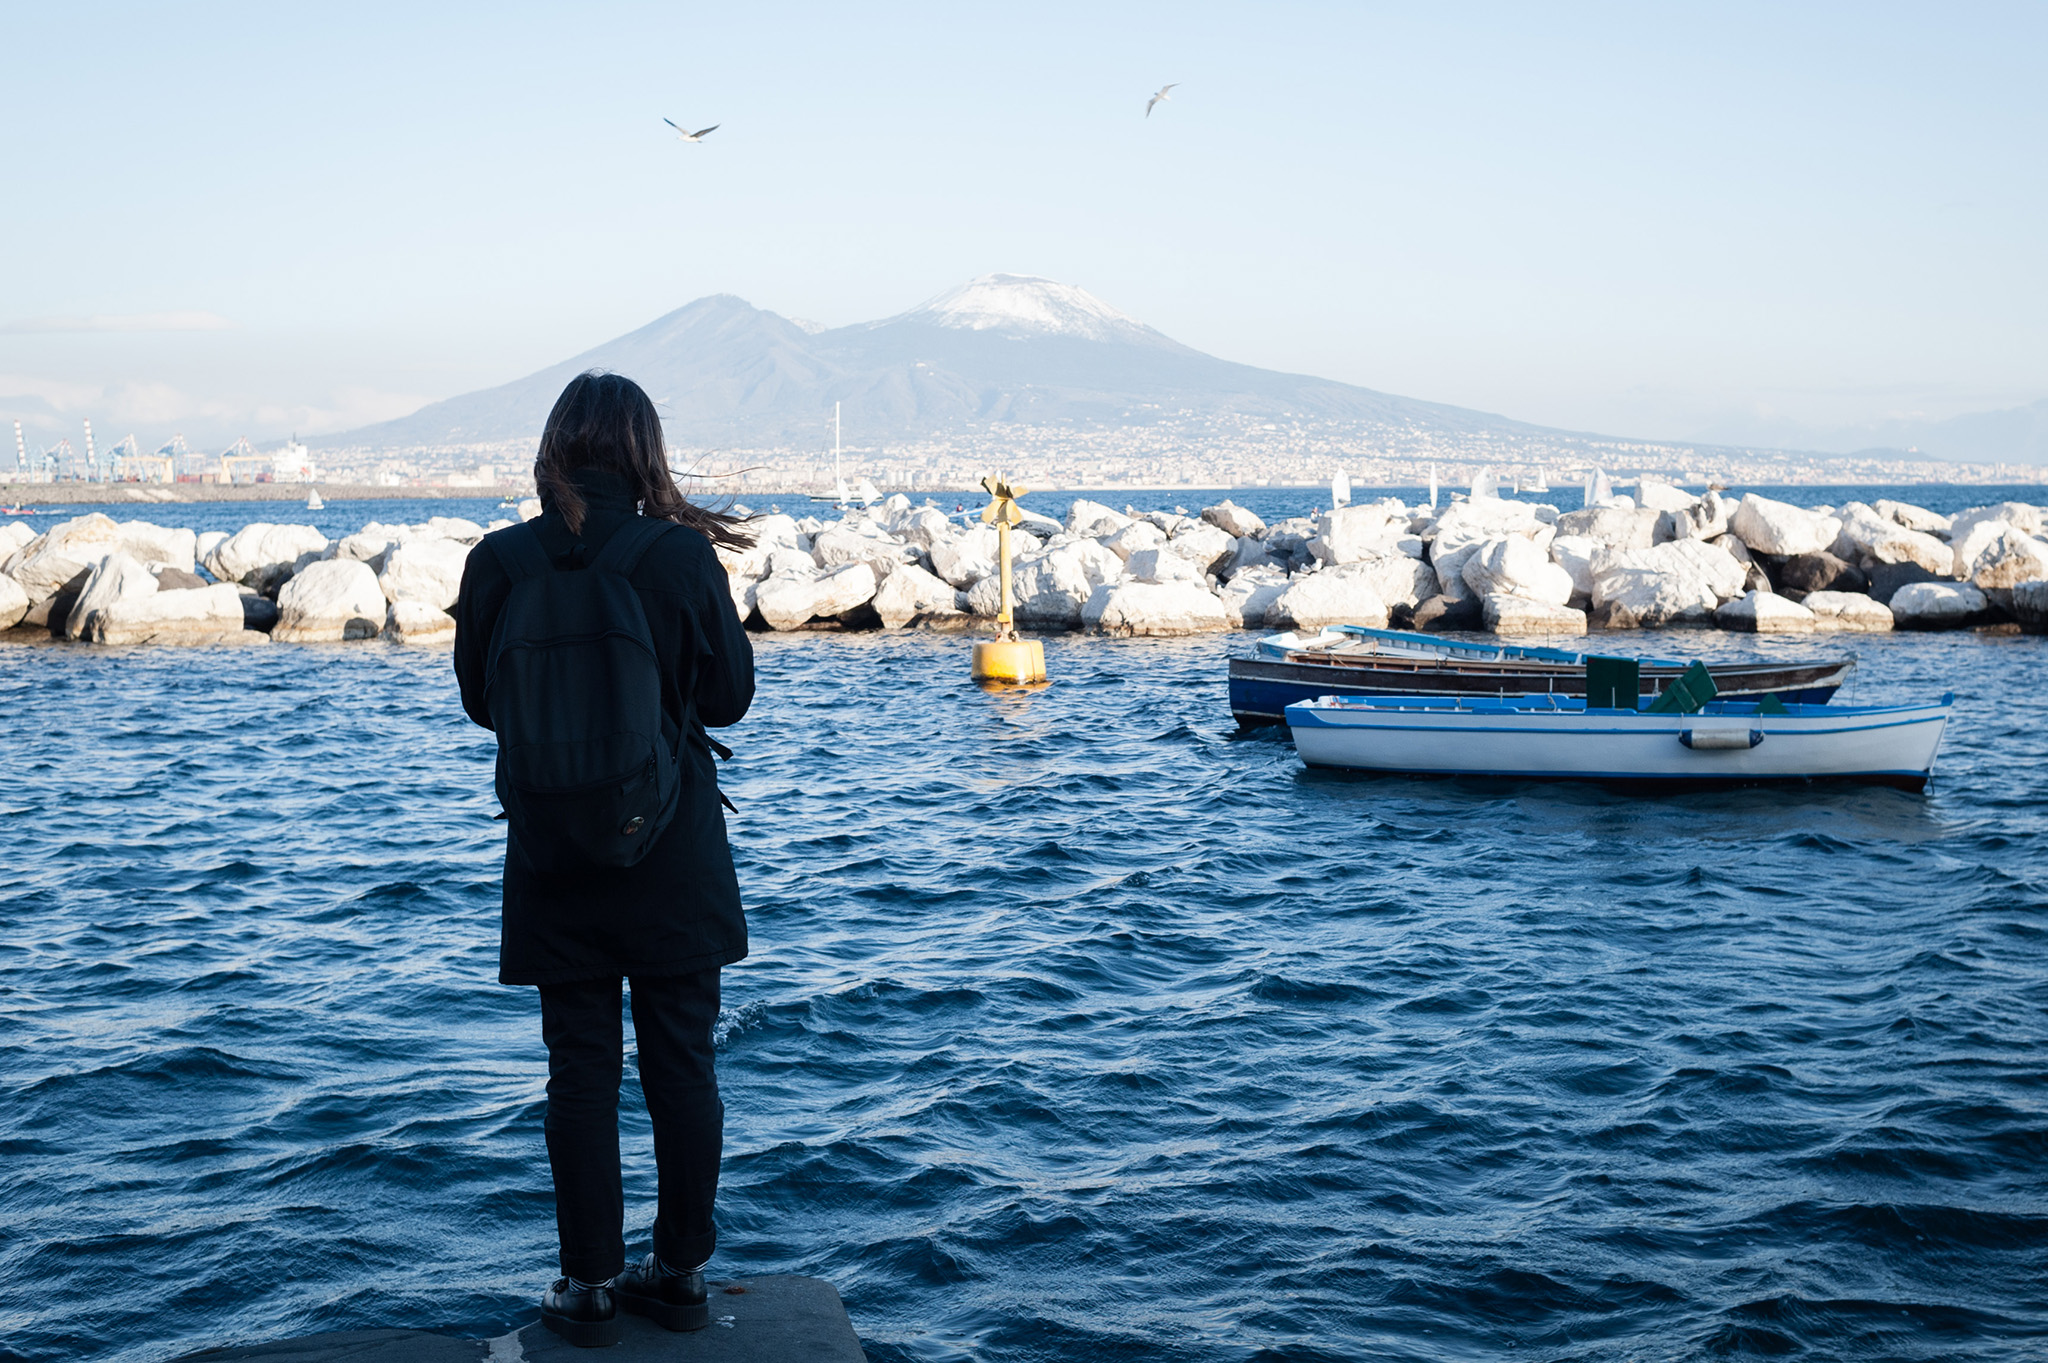 Fotografia di reportage, fotografo Guglielmo Verrienti - Passeggiata per Napoli